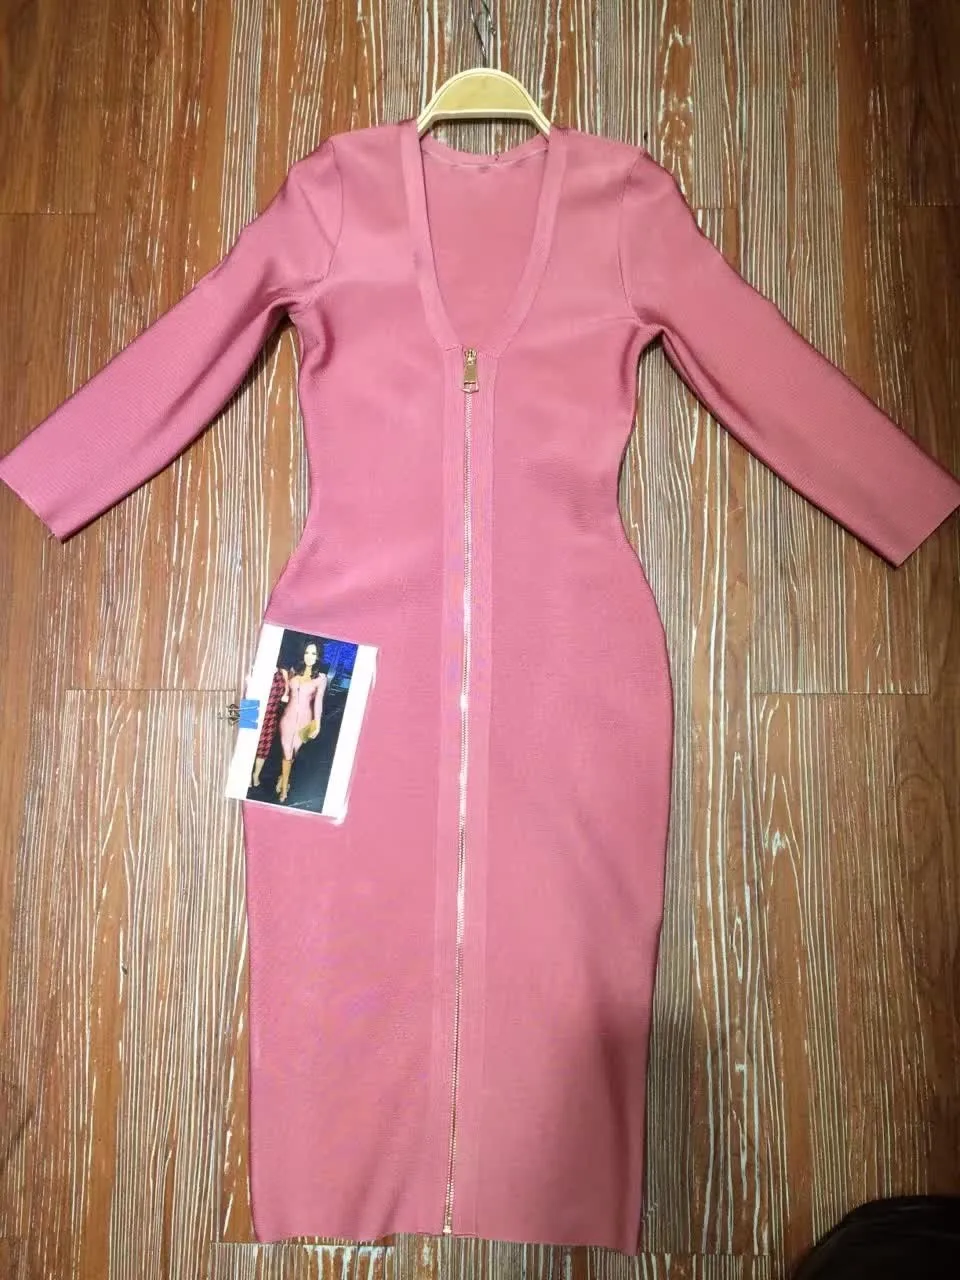 Высокое качество Новая мода сексуальные женские заводские платья розовый v-образный вырез с длинным рукавом на молнии спереди праздничное платье-повязка знаменитости